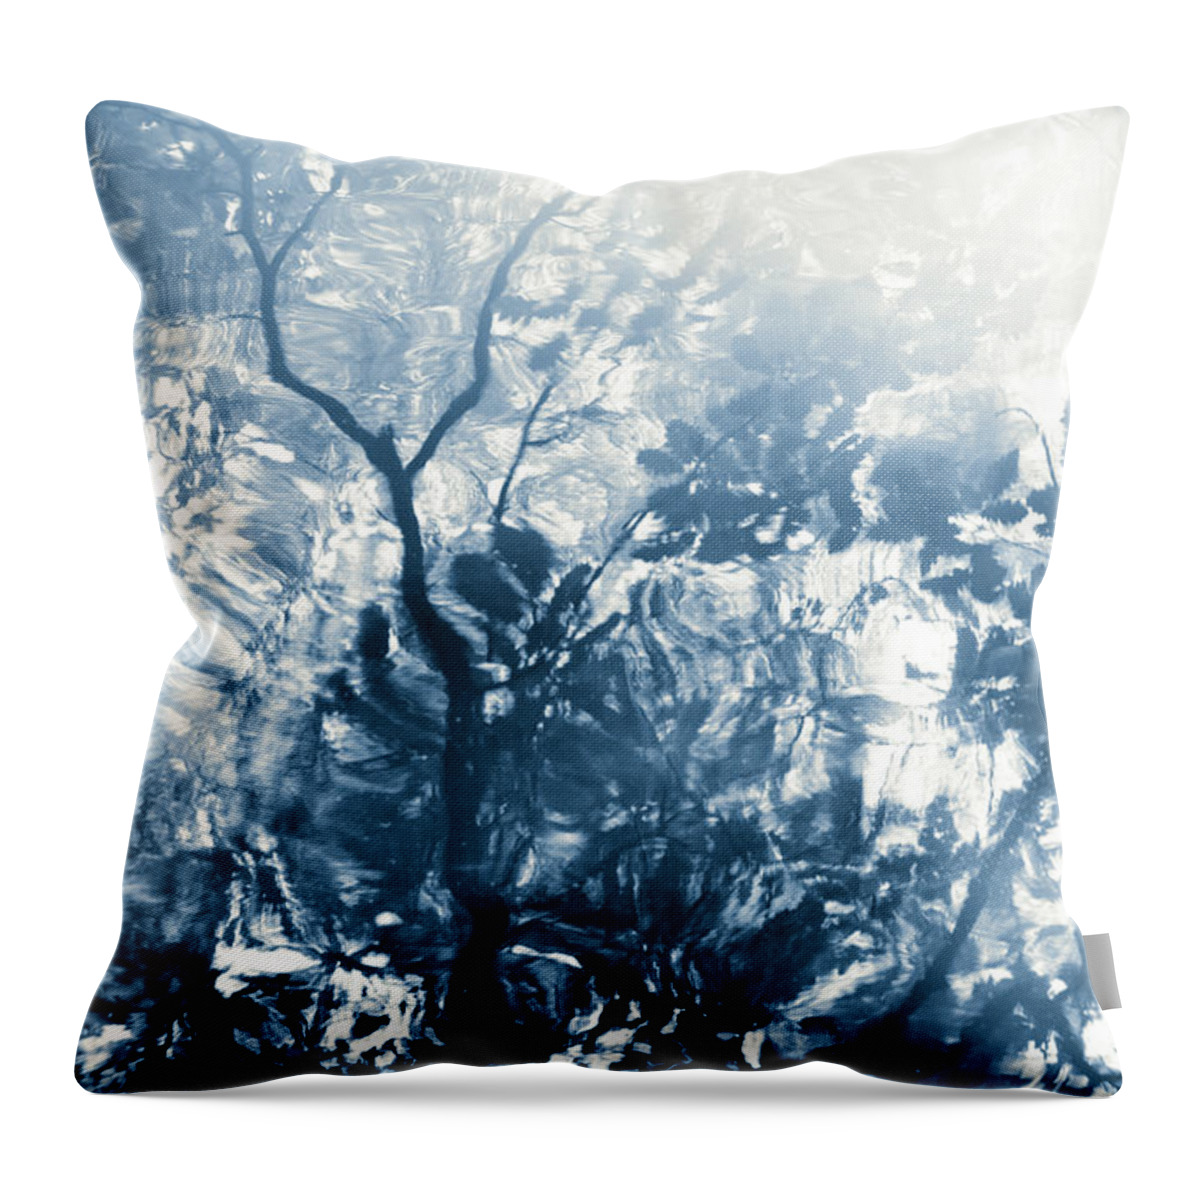 Nature Throw Pillow featuring the photograph Lago De La Luz by Dorit Fuhg